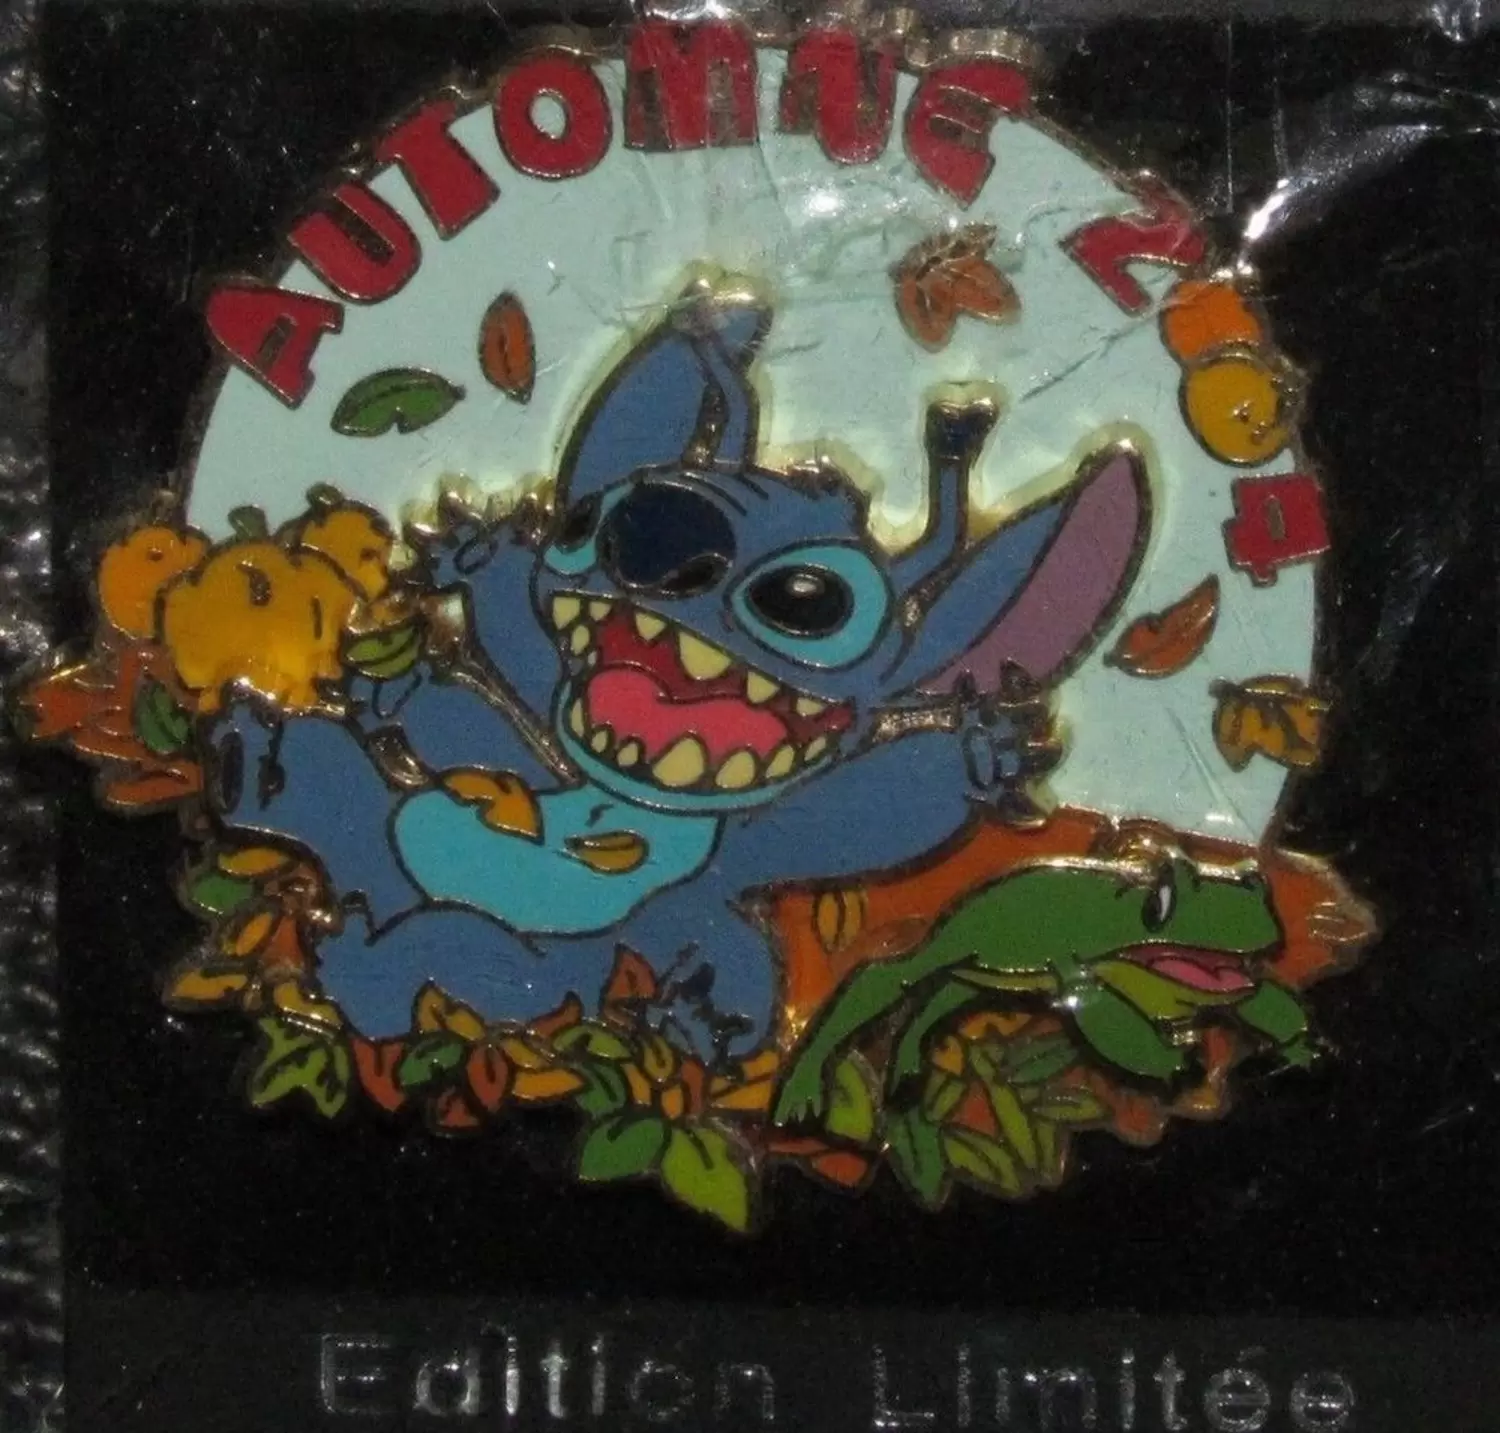 Les Saisons - Stitch Automne 2004